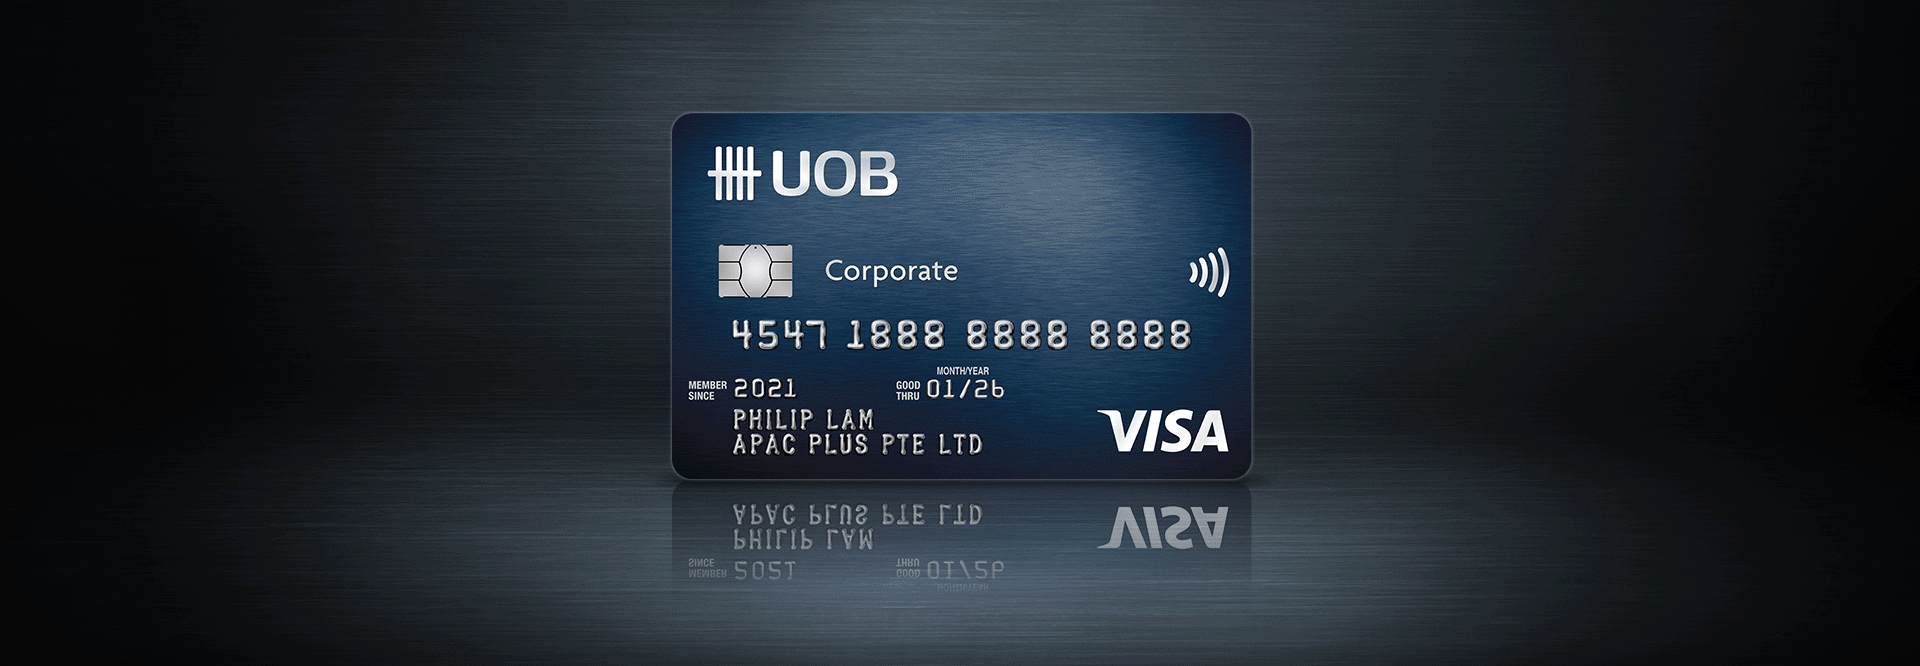 UOB Corporate Card